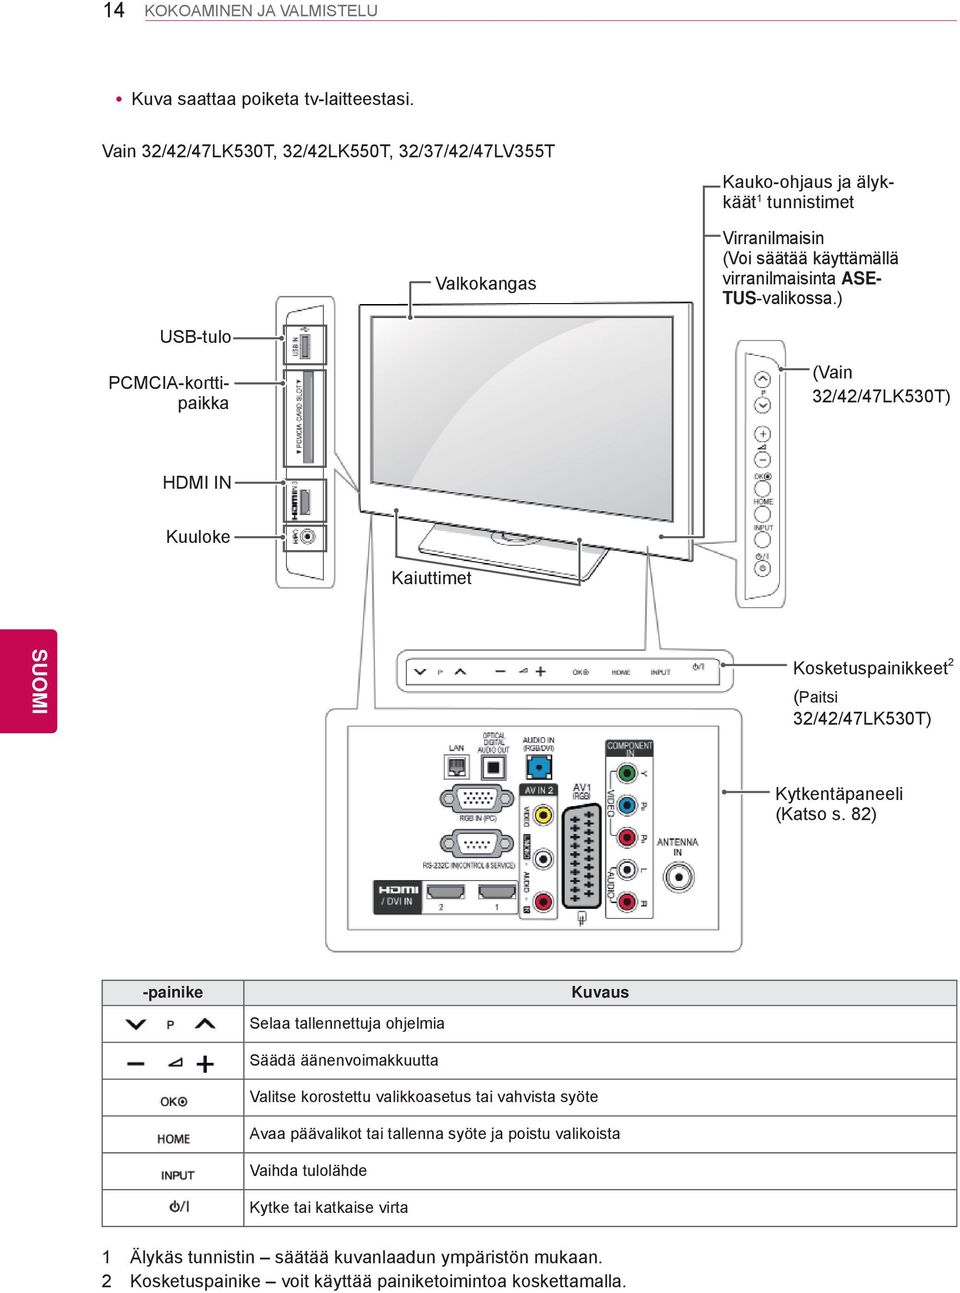 ) USB-tulo PCMCIA-korttipaikka (Vain 32/42/47LK530T) HDMI IN Kuuloke Kaiuttimet Kosketuspainikkeet 2 (Paitsi 32/42/47LK530T) Kytkentäpaneeli (Katso s.